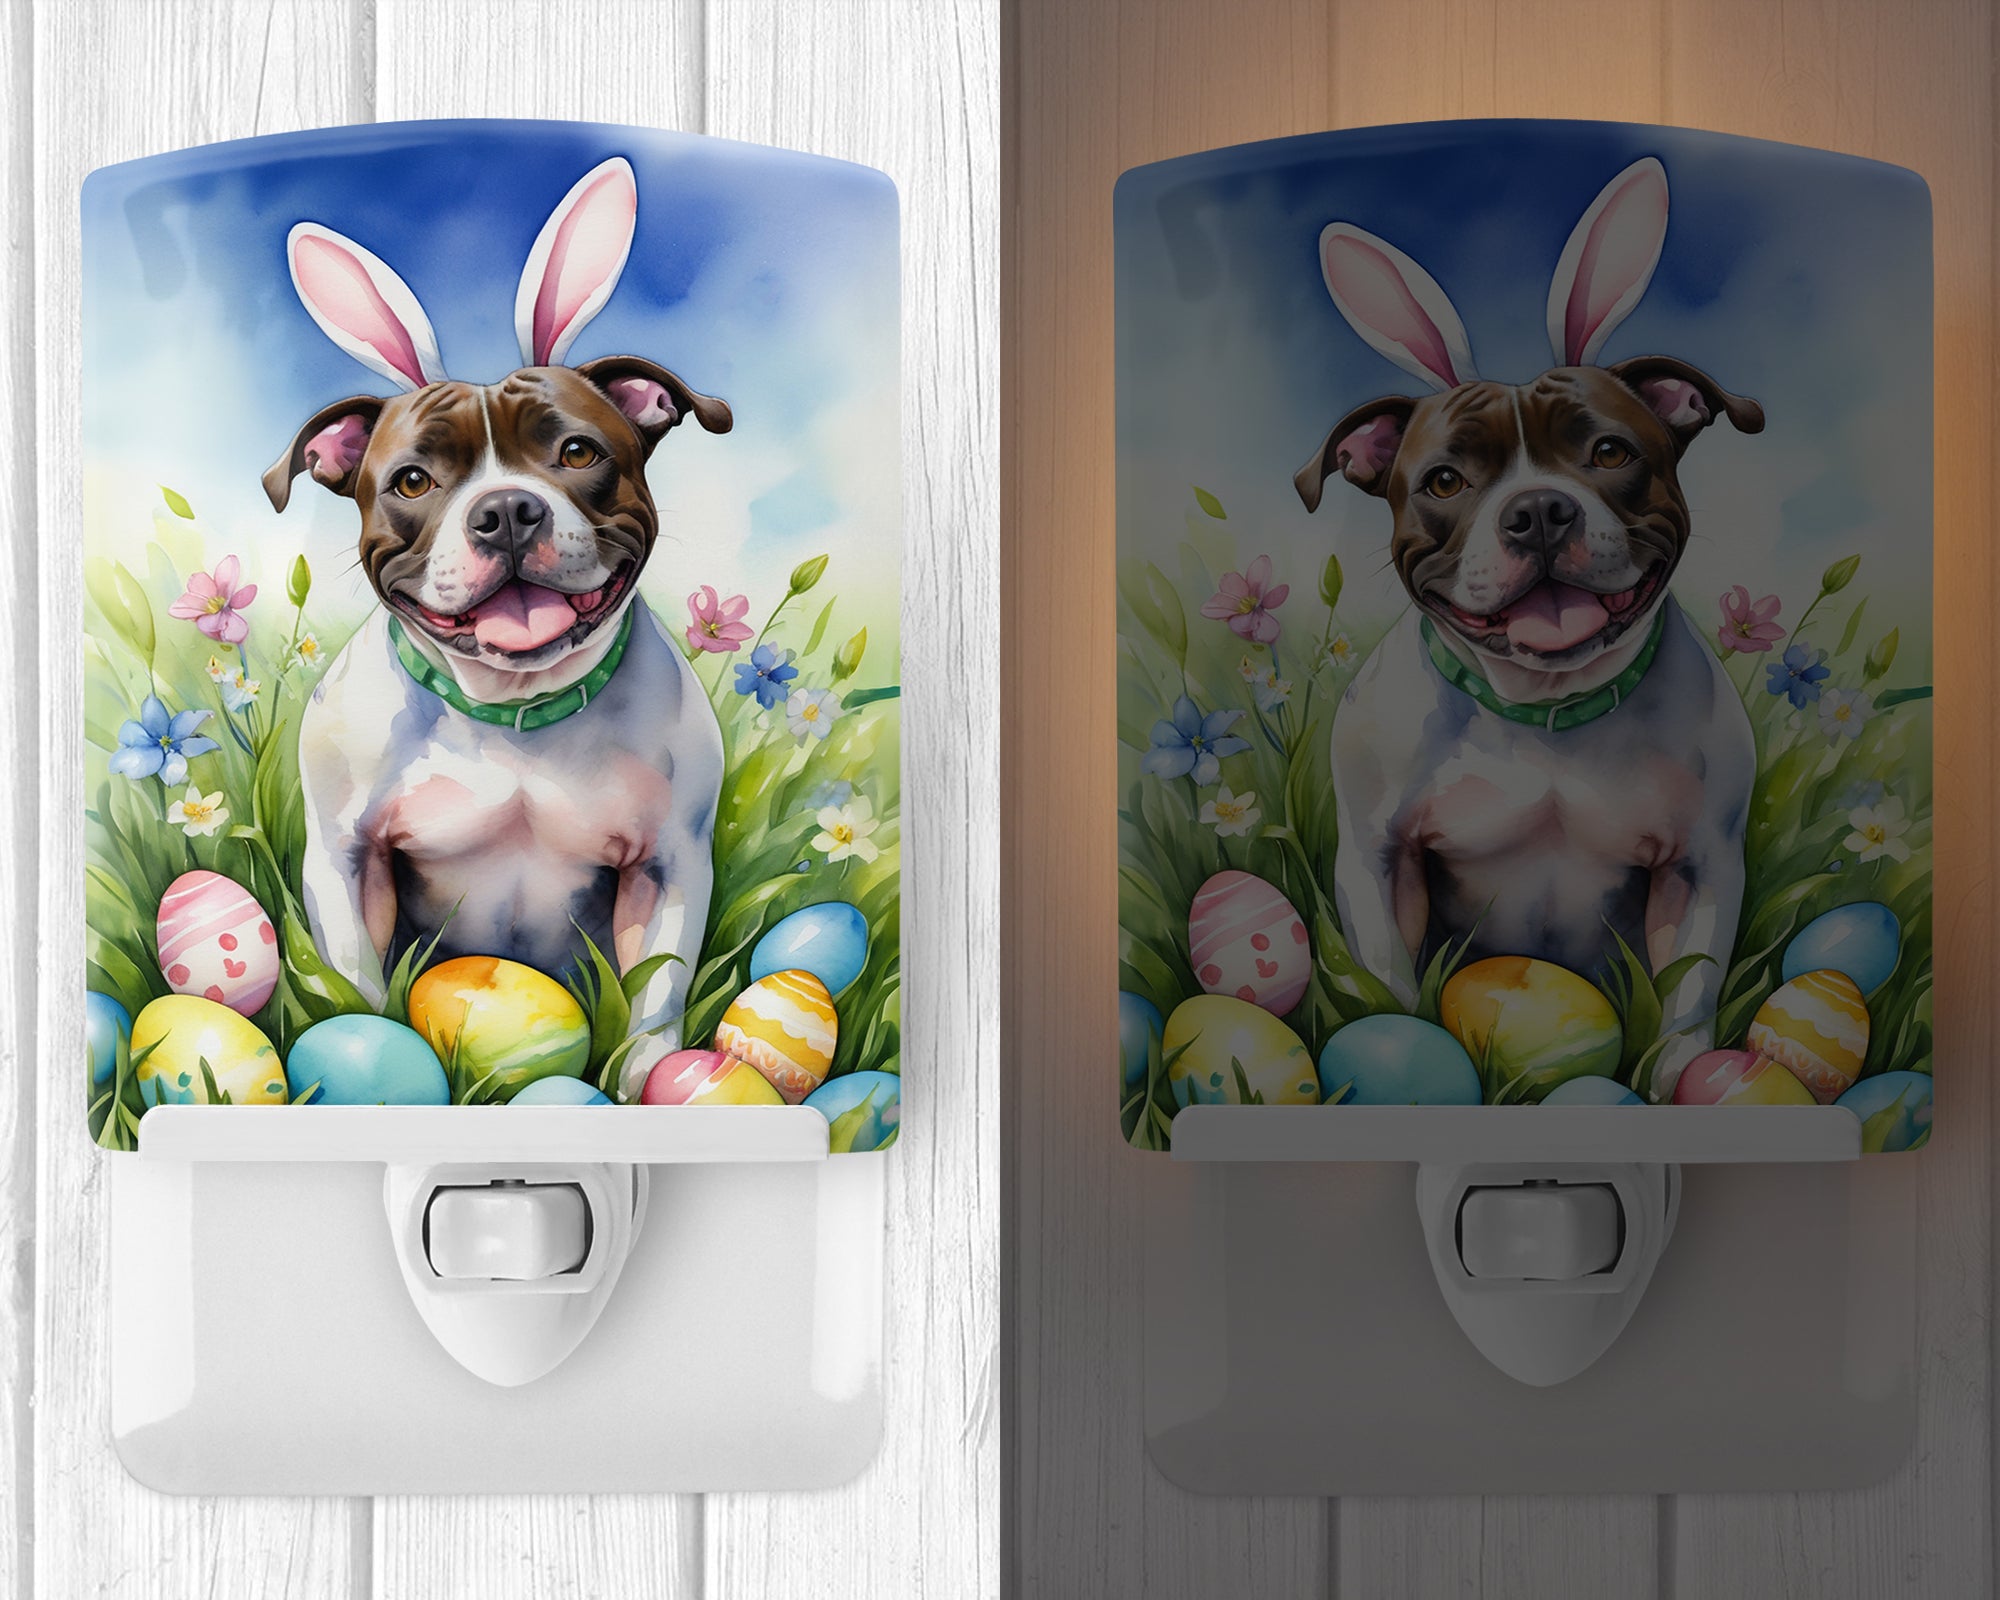 Buy this Staffordshire Bull Terrier Easter Egg Hunt Ceramic Night Light